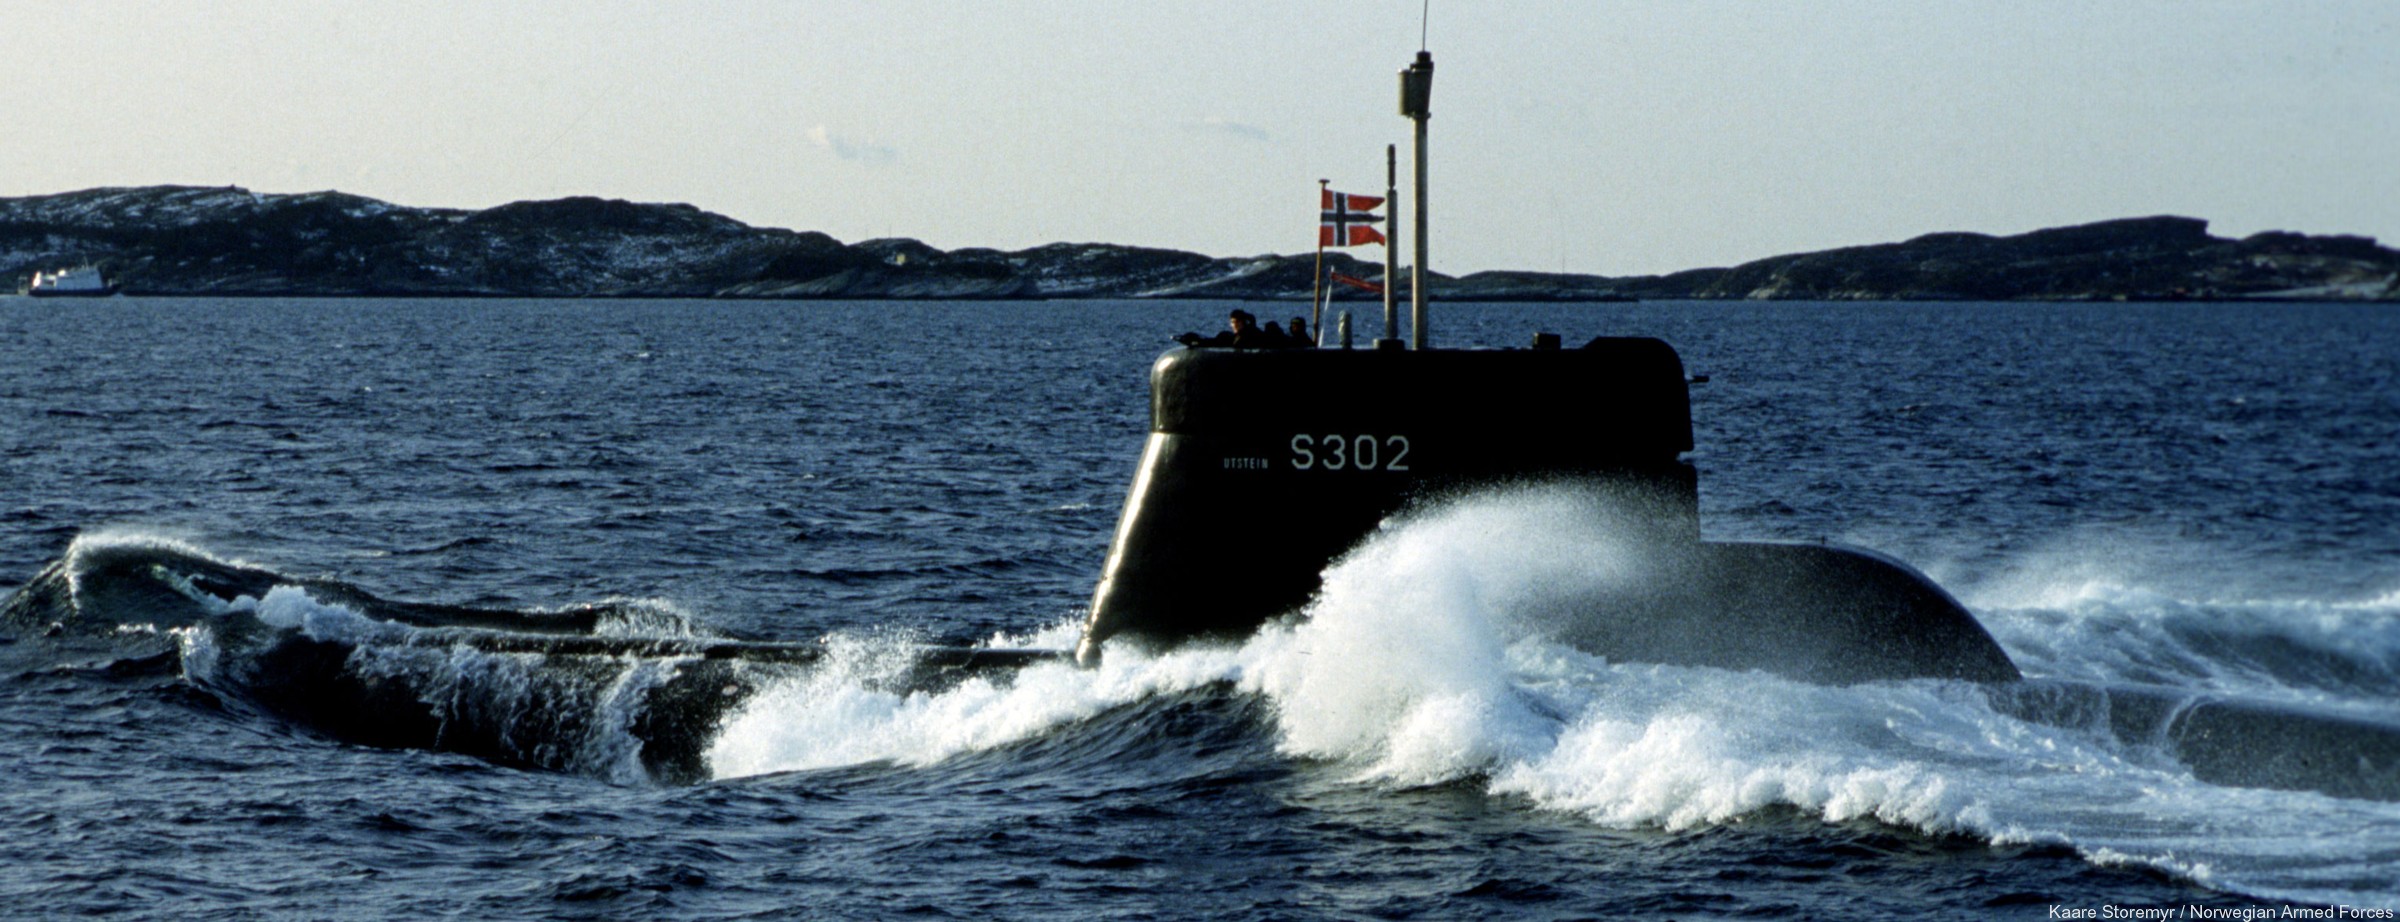 kobben class type 207 submarine royal norwegian navy sjøforsvaret knm hnoms s302 utstein 02